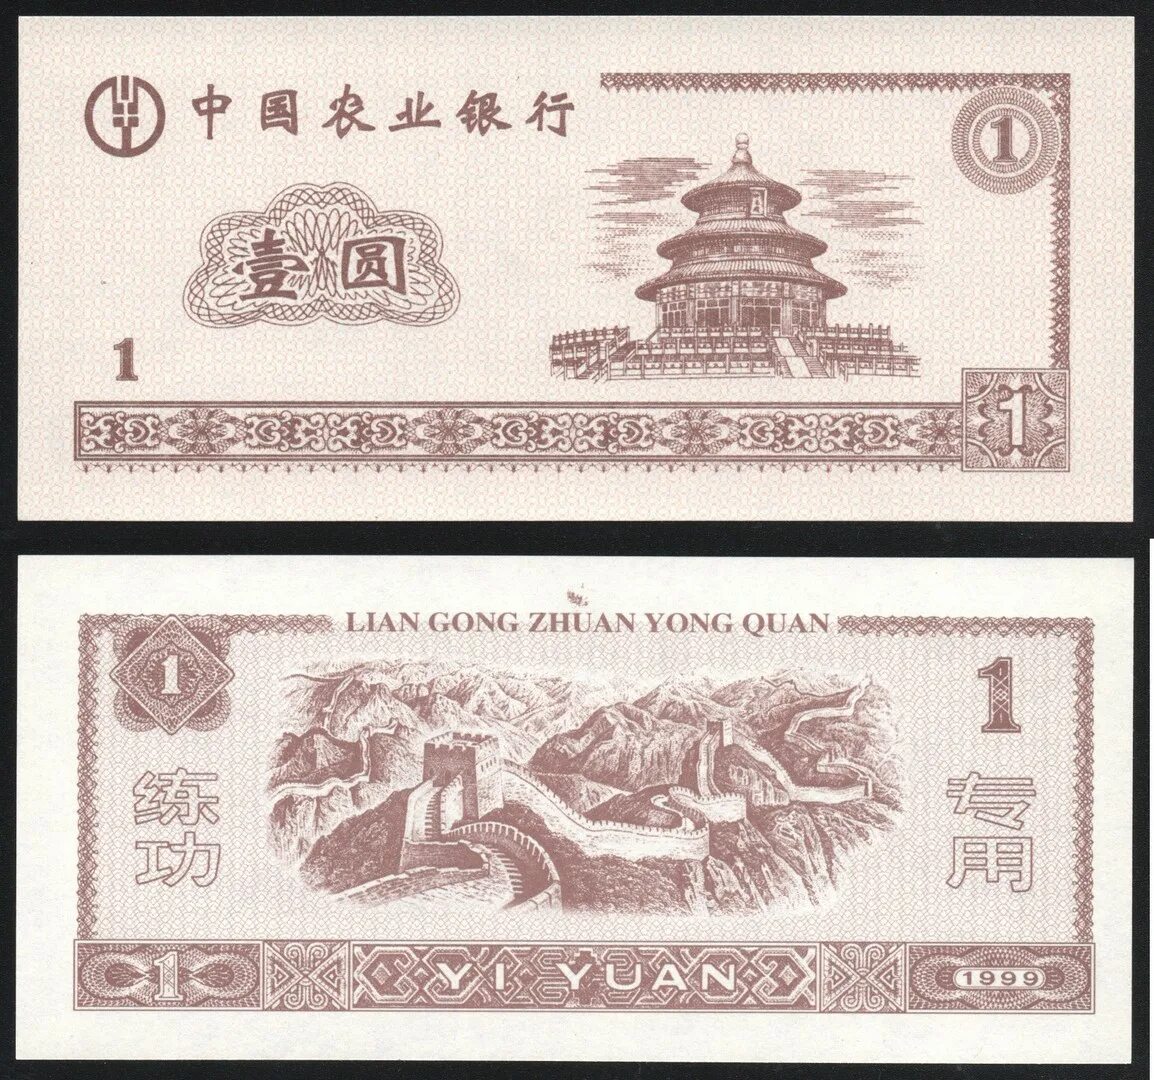 Миллион юаней это сколько рублей. Китайские банкноты 1 Yuan 1999. Банкнота Китая Lian Gong. 1 Юань 1999 года. Китайская валюта в рублях.